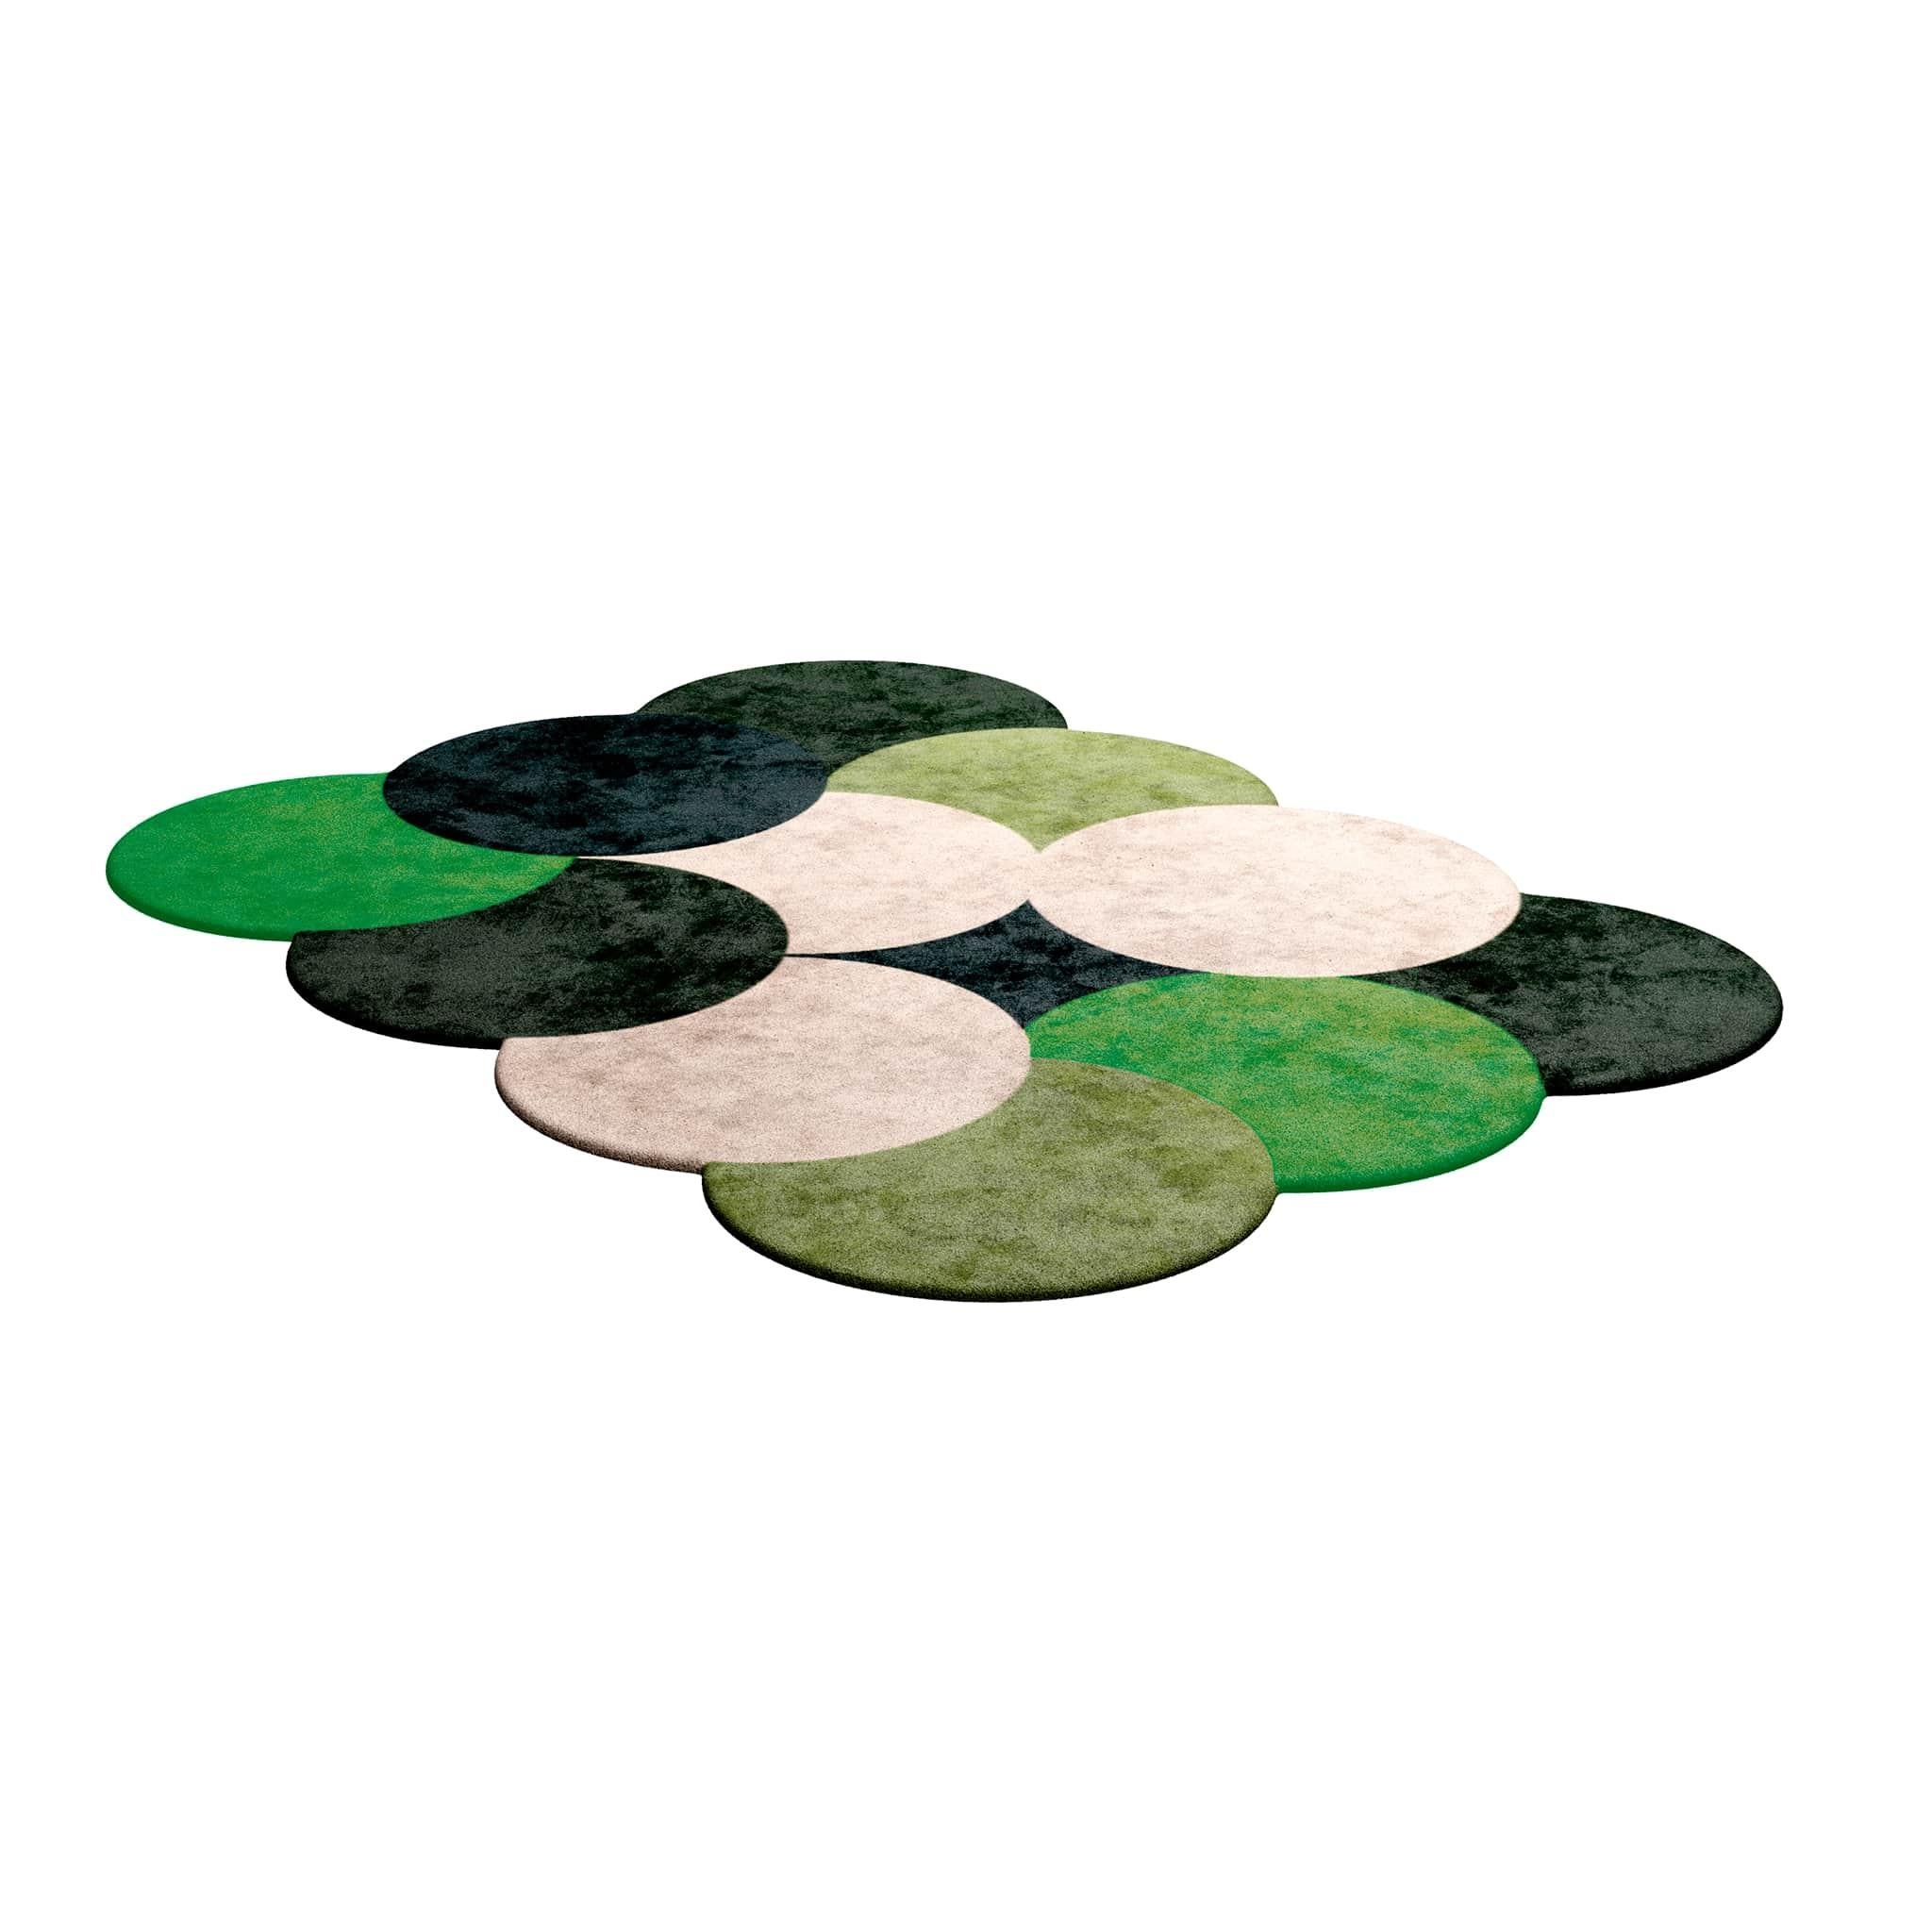 Moderner rechteckiger handgetufteter Teppich im Memphis-Stil, Kreis-Muster, Grün 
Tapis Shaped #050 ist ein grüner Teppich, der zu einer Kollektion von trendigen Teppichen mit modernem Flair für zeitlose Innenräume gehört.
Der moderne grüne